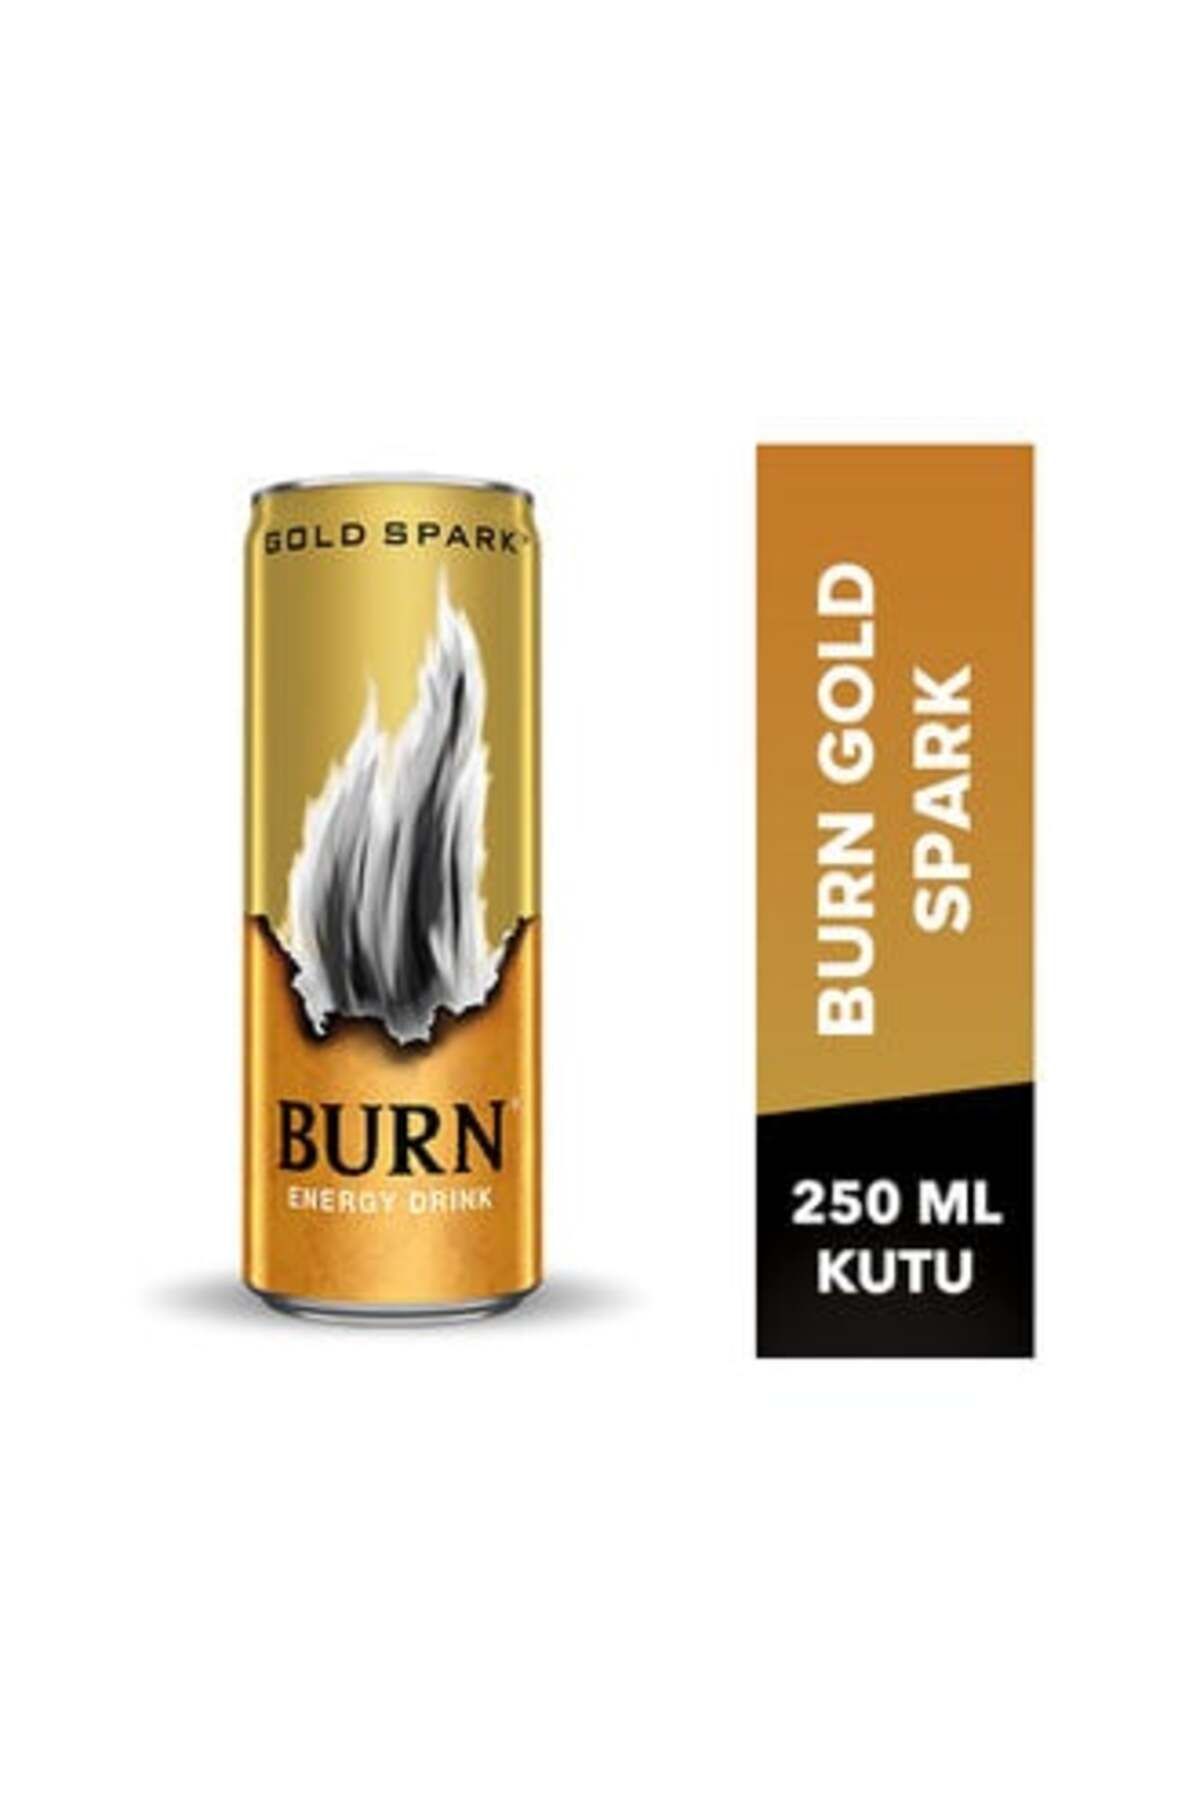 Burn Gold Spark Enerji İçeceği 250 Ml ( 12 ADET )